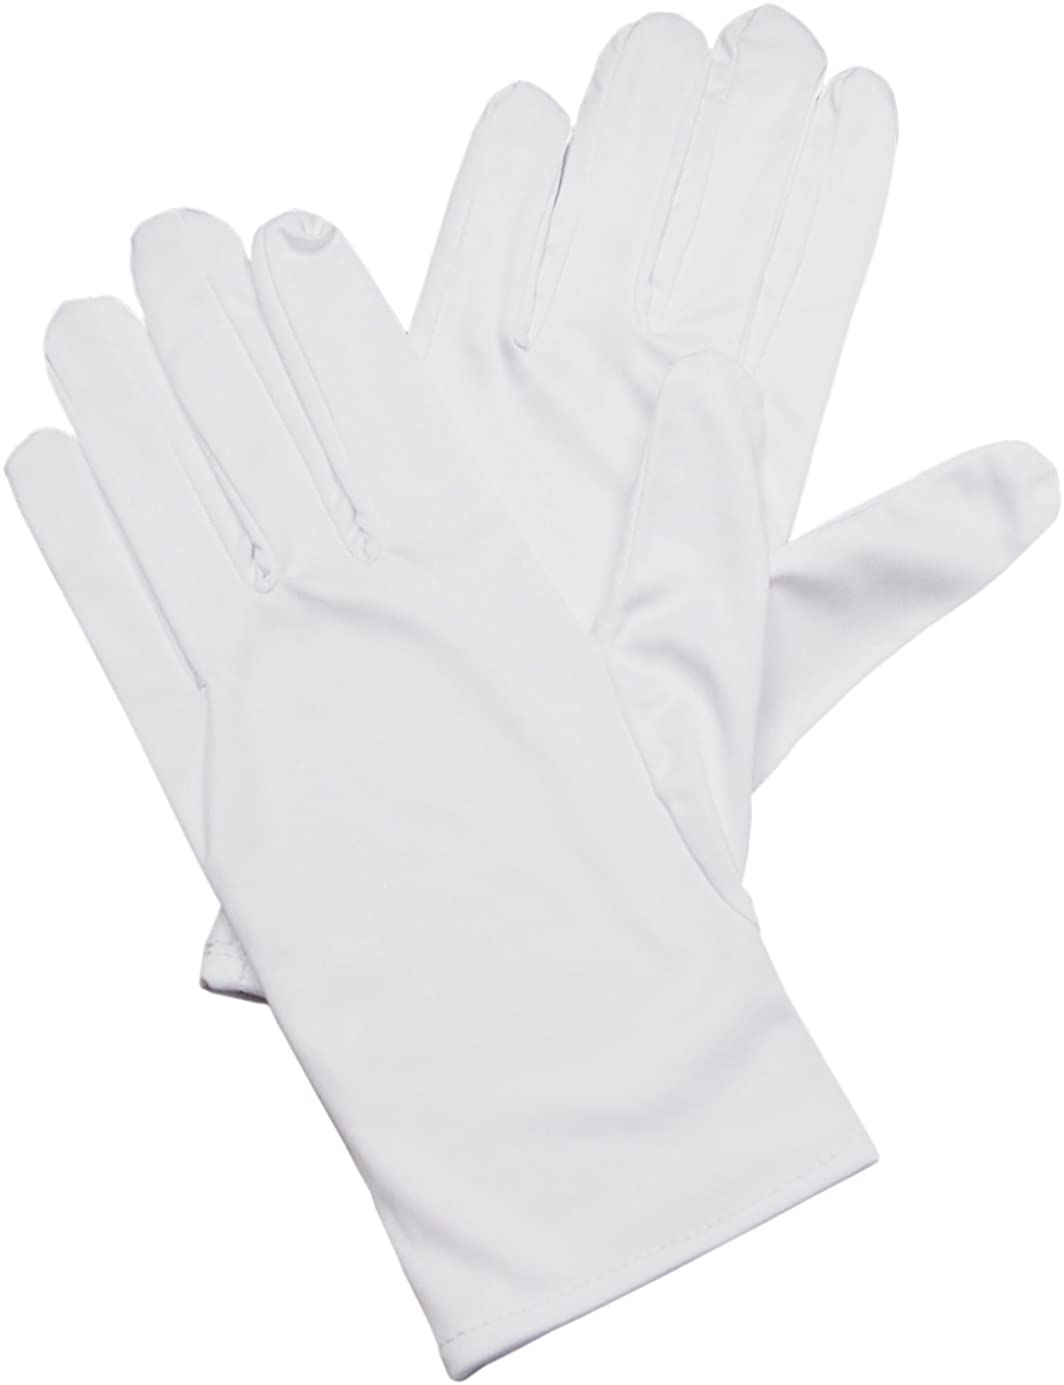 超美品再入荷品質至上 無料サンプルOK マイクロファイバーグローブ 宝飾手袋 Sサイズ ホワイト